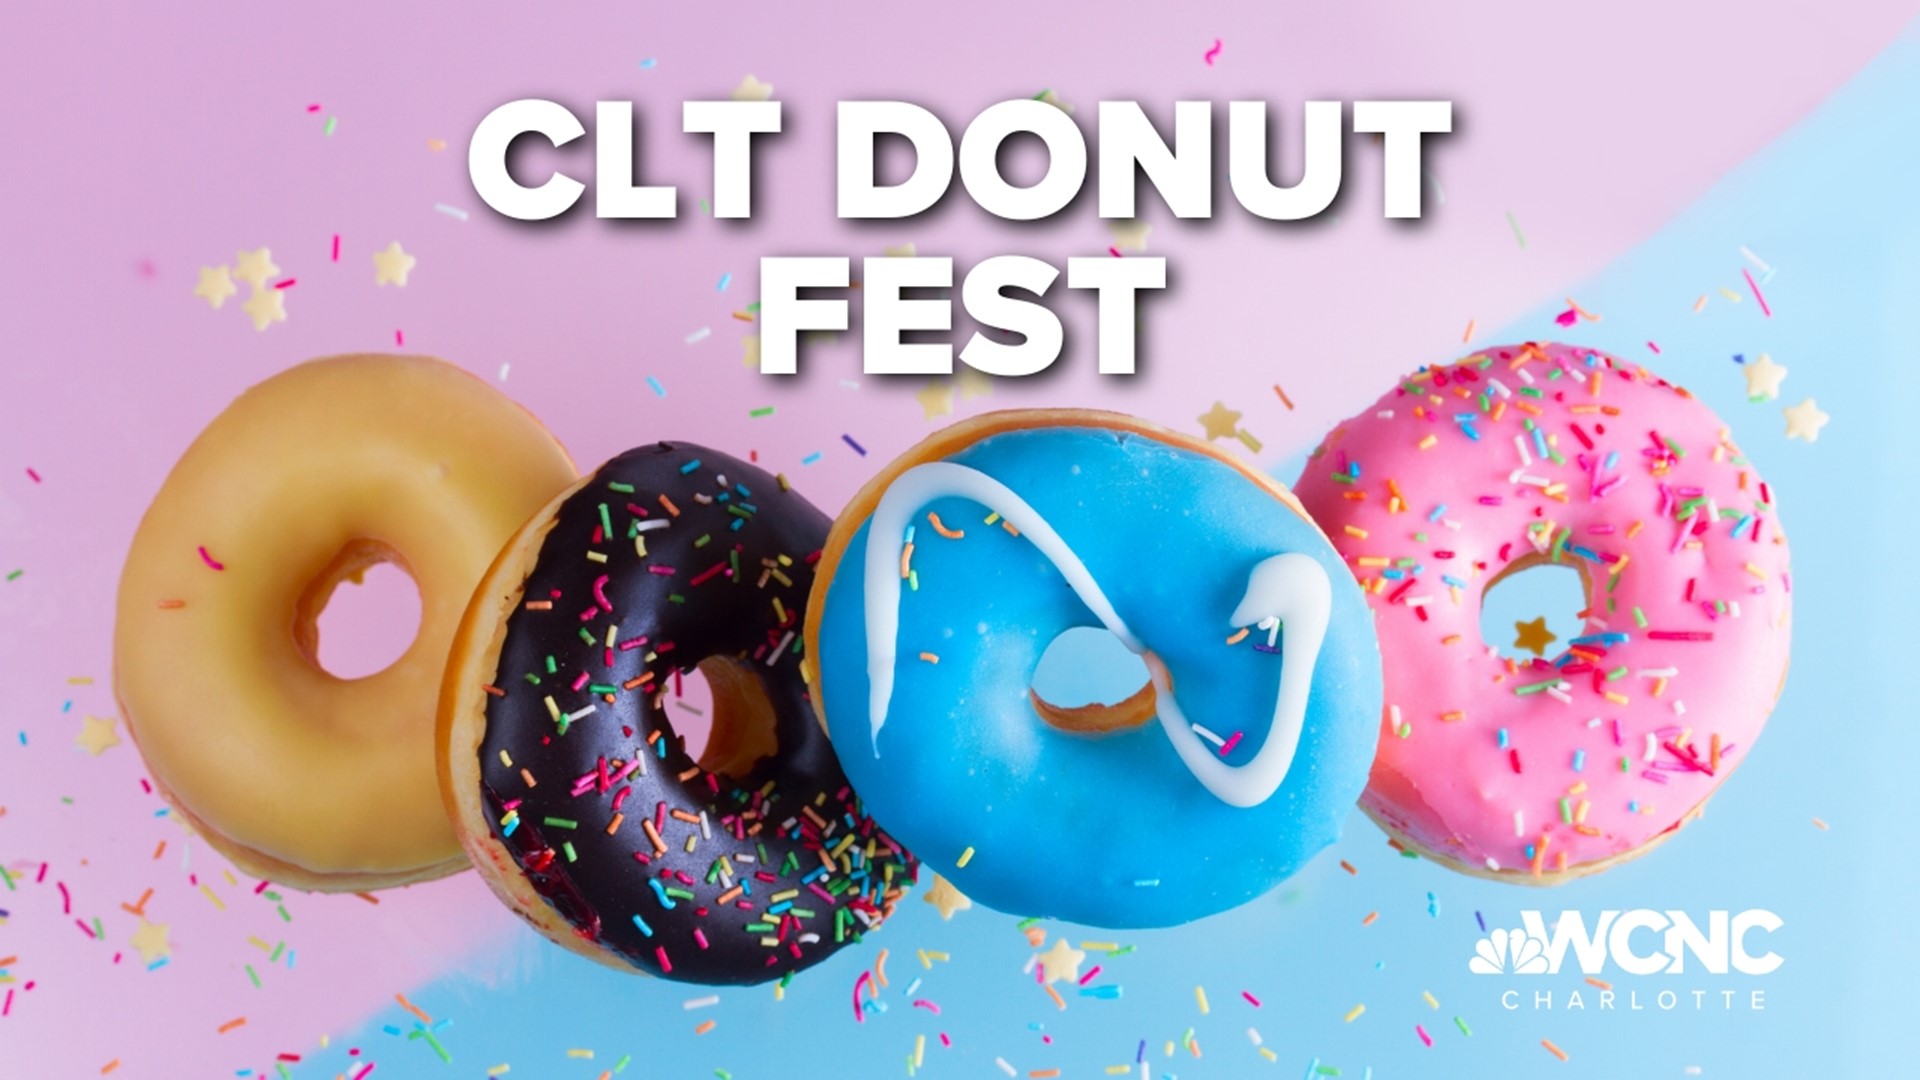 Charlotte Donut Festival held on Sunday